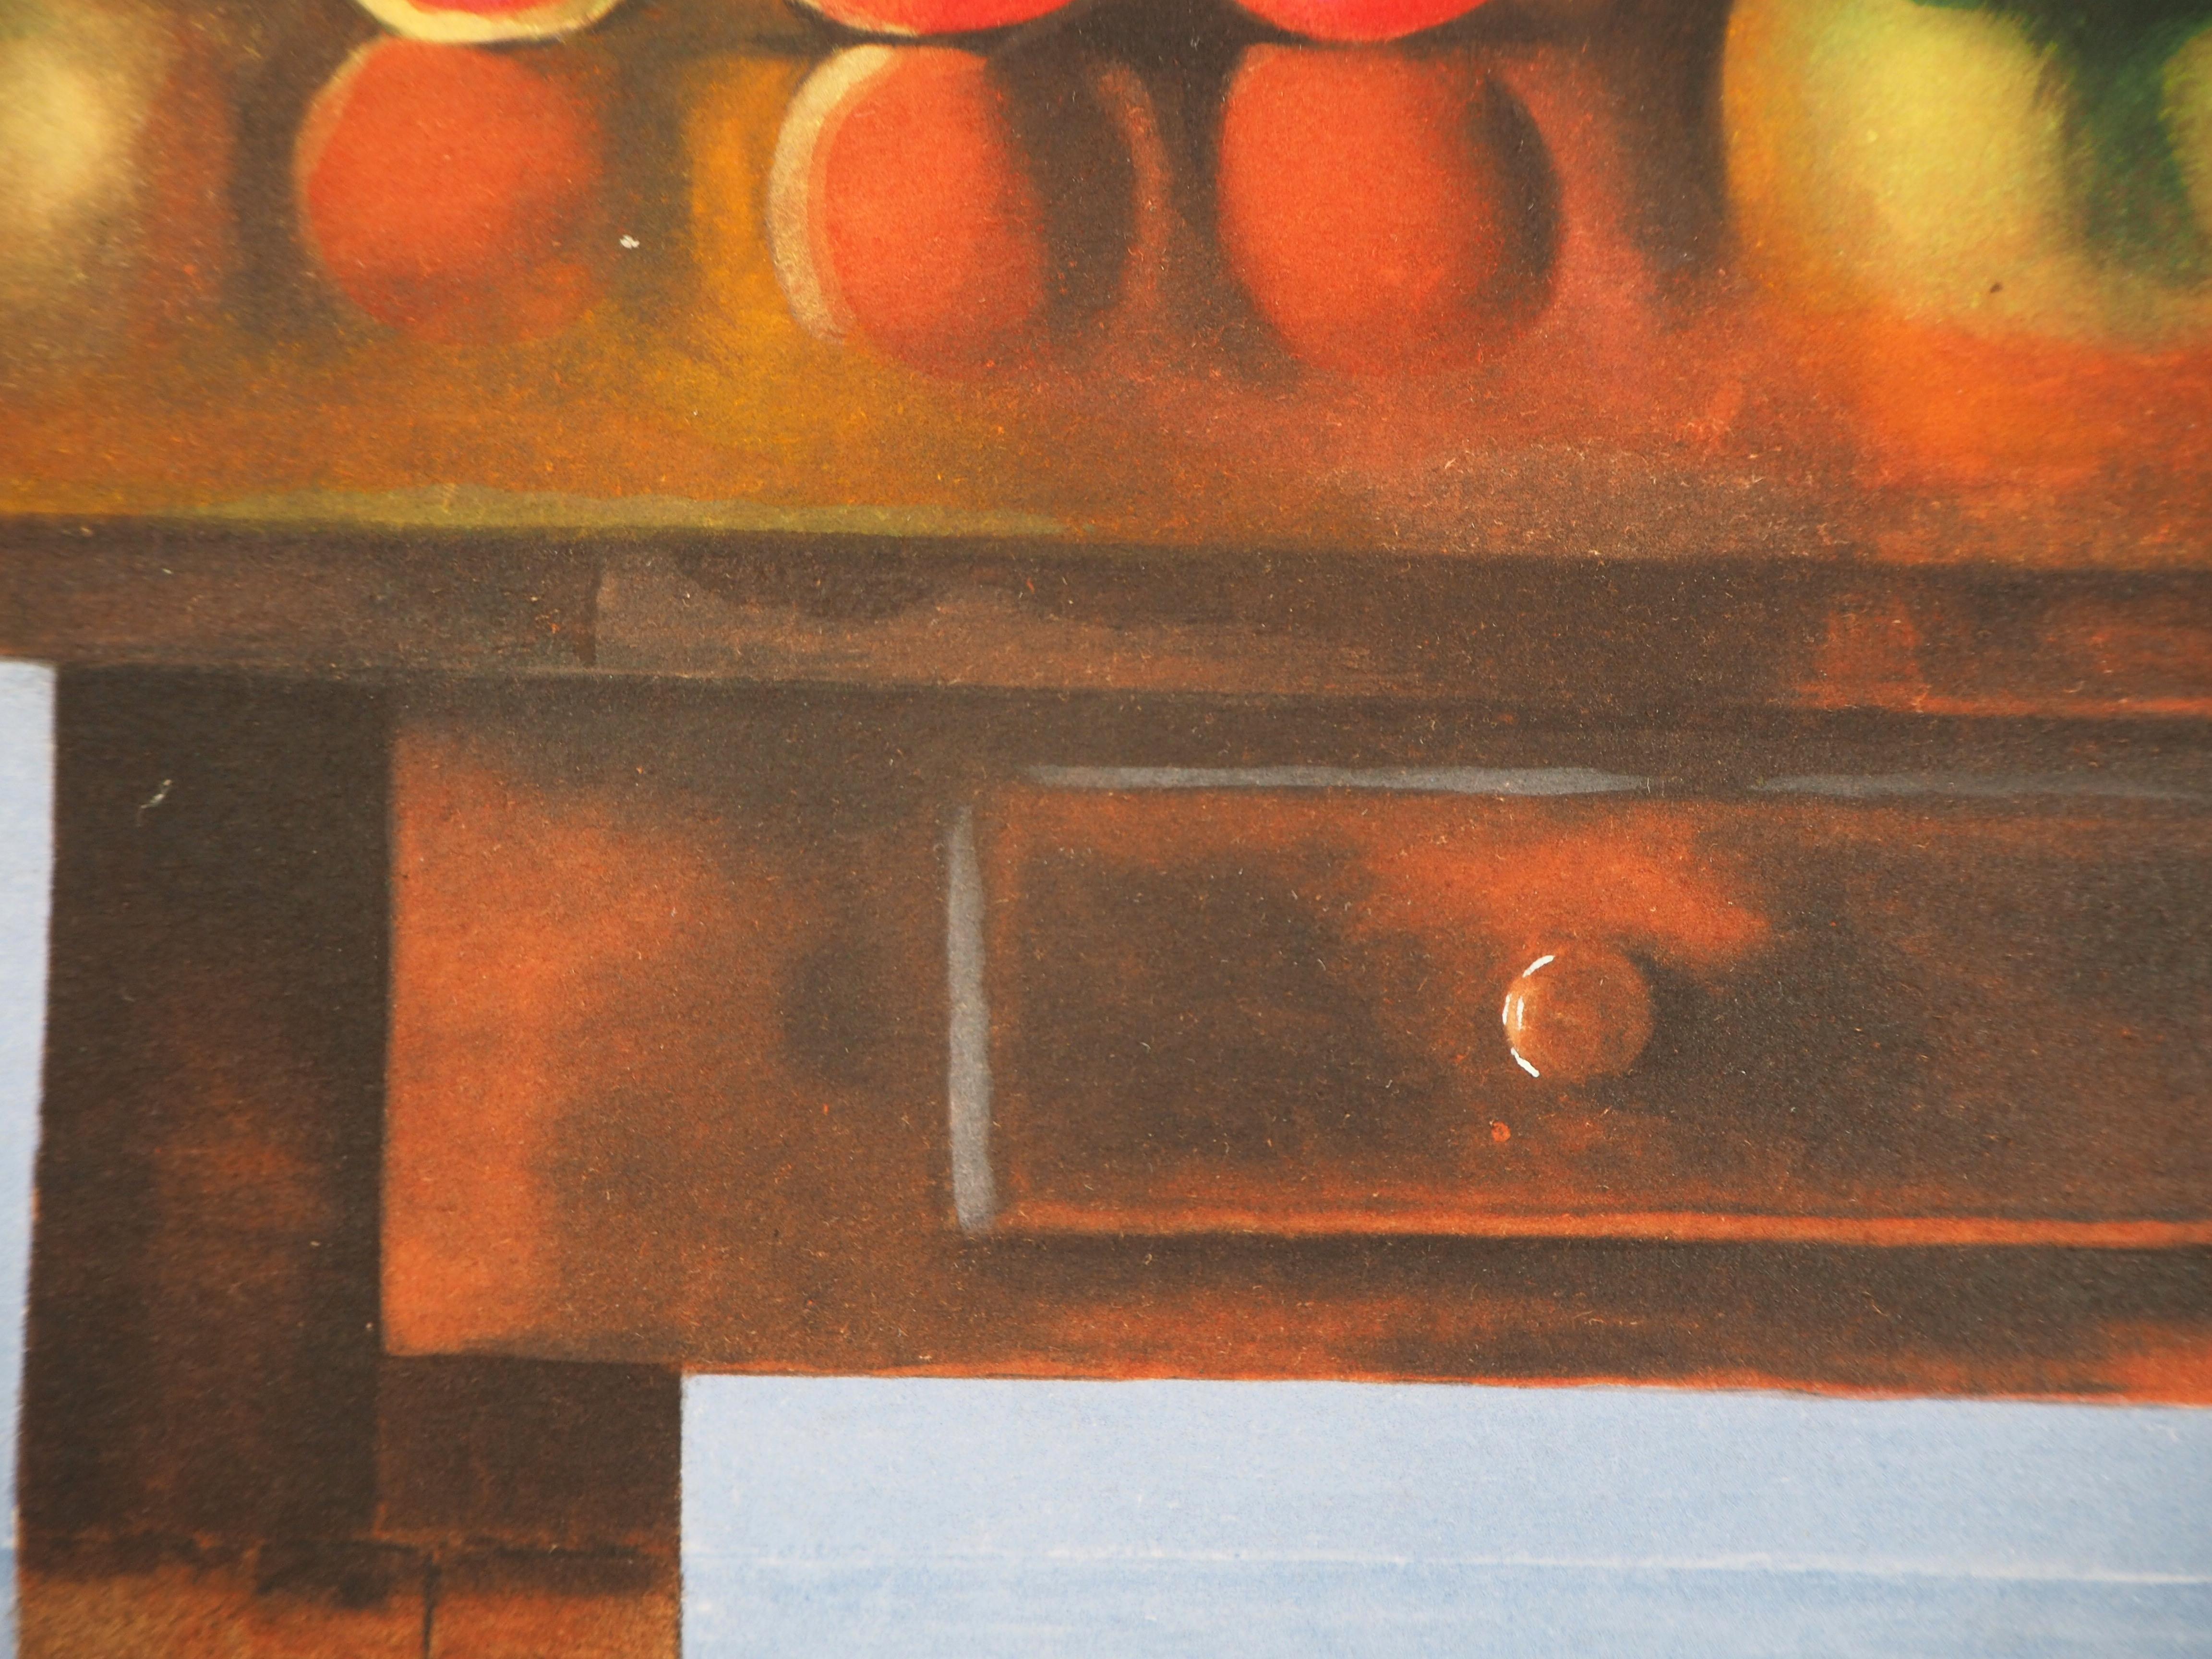 Moise KISLING
Tabelle mit Sommerfrüchten

Original-Lithographie
Auf Arches Pergament
28 x 38 cm (ca. 11 x 15 Zoll)

Sehr guter Zustand